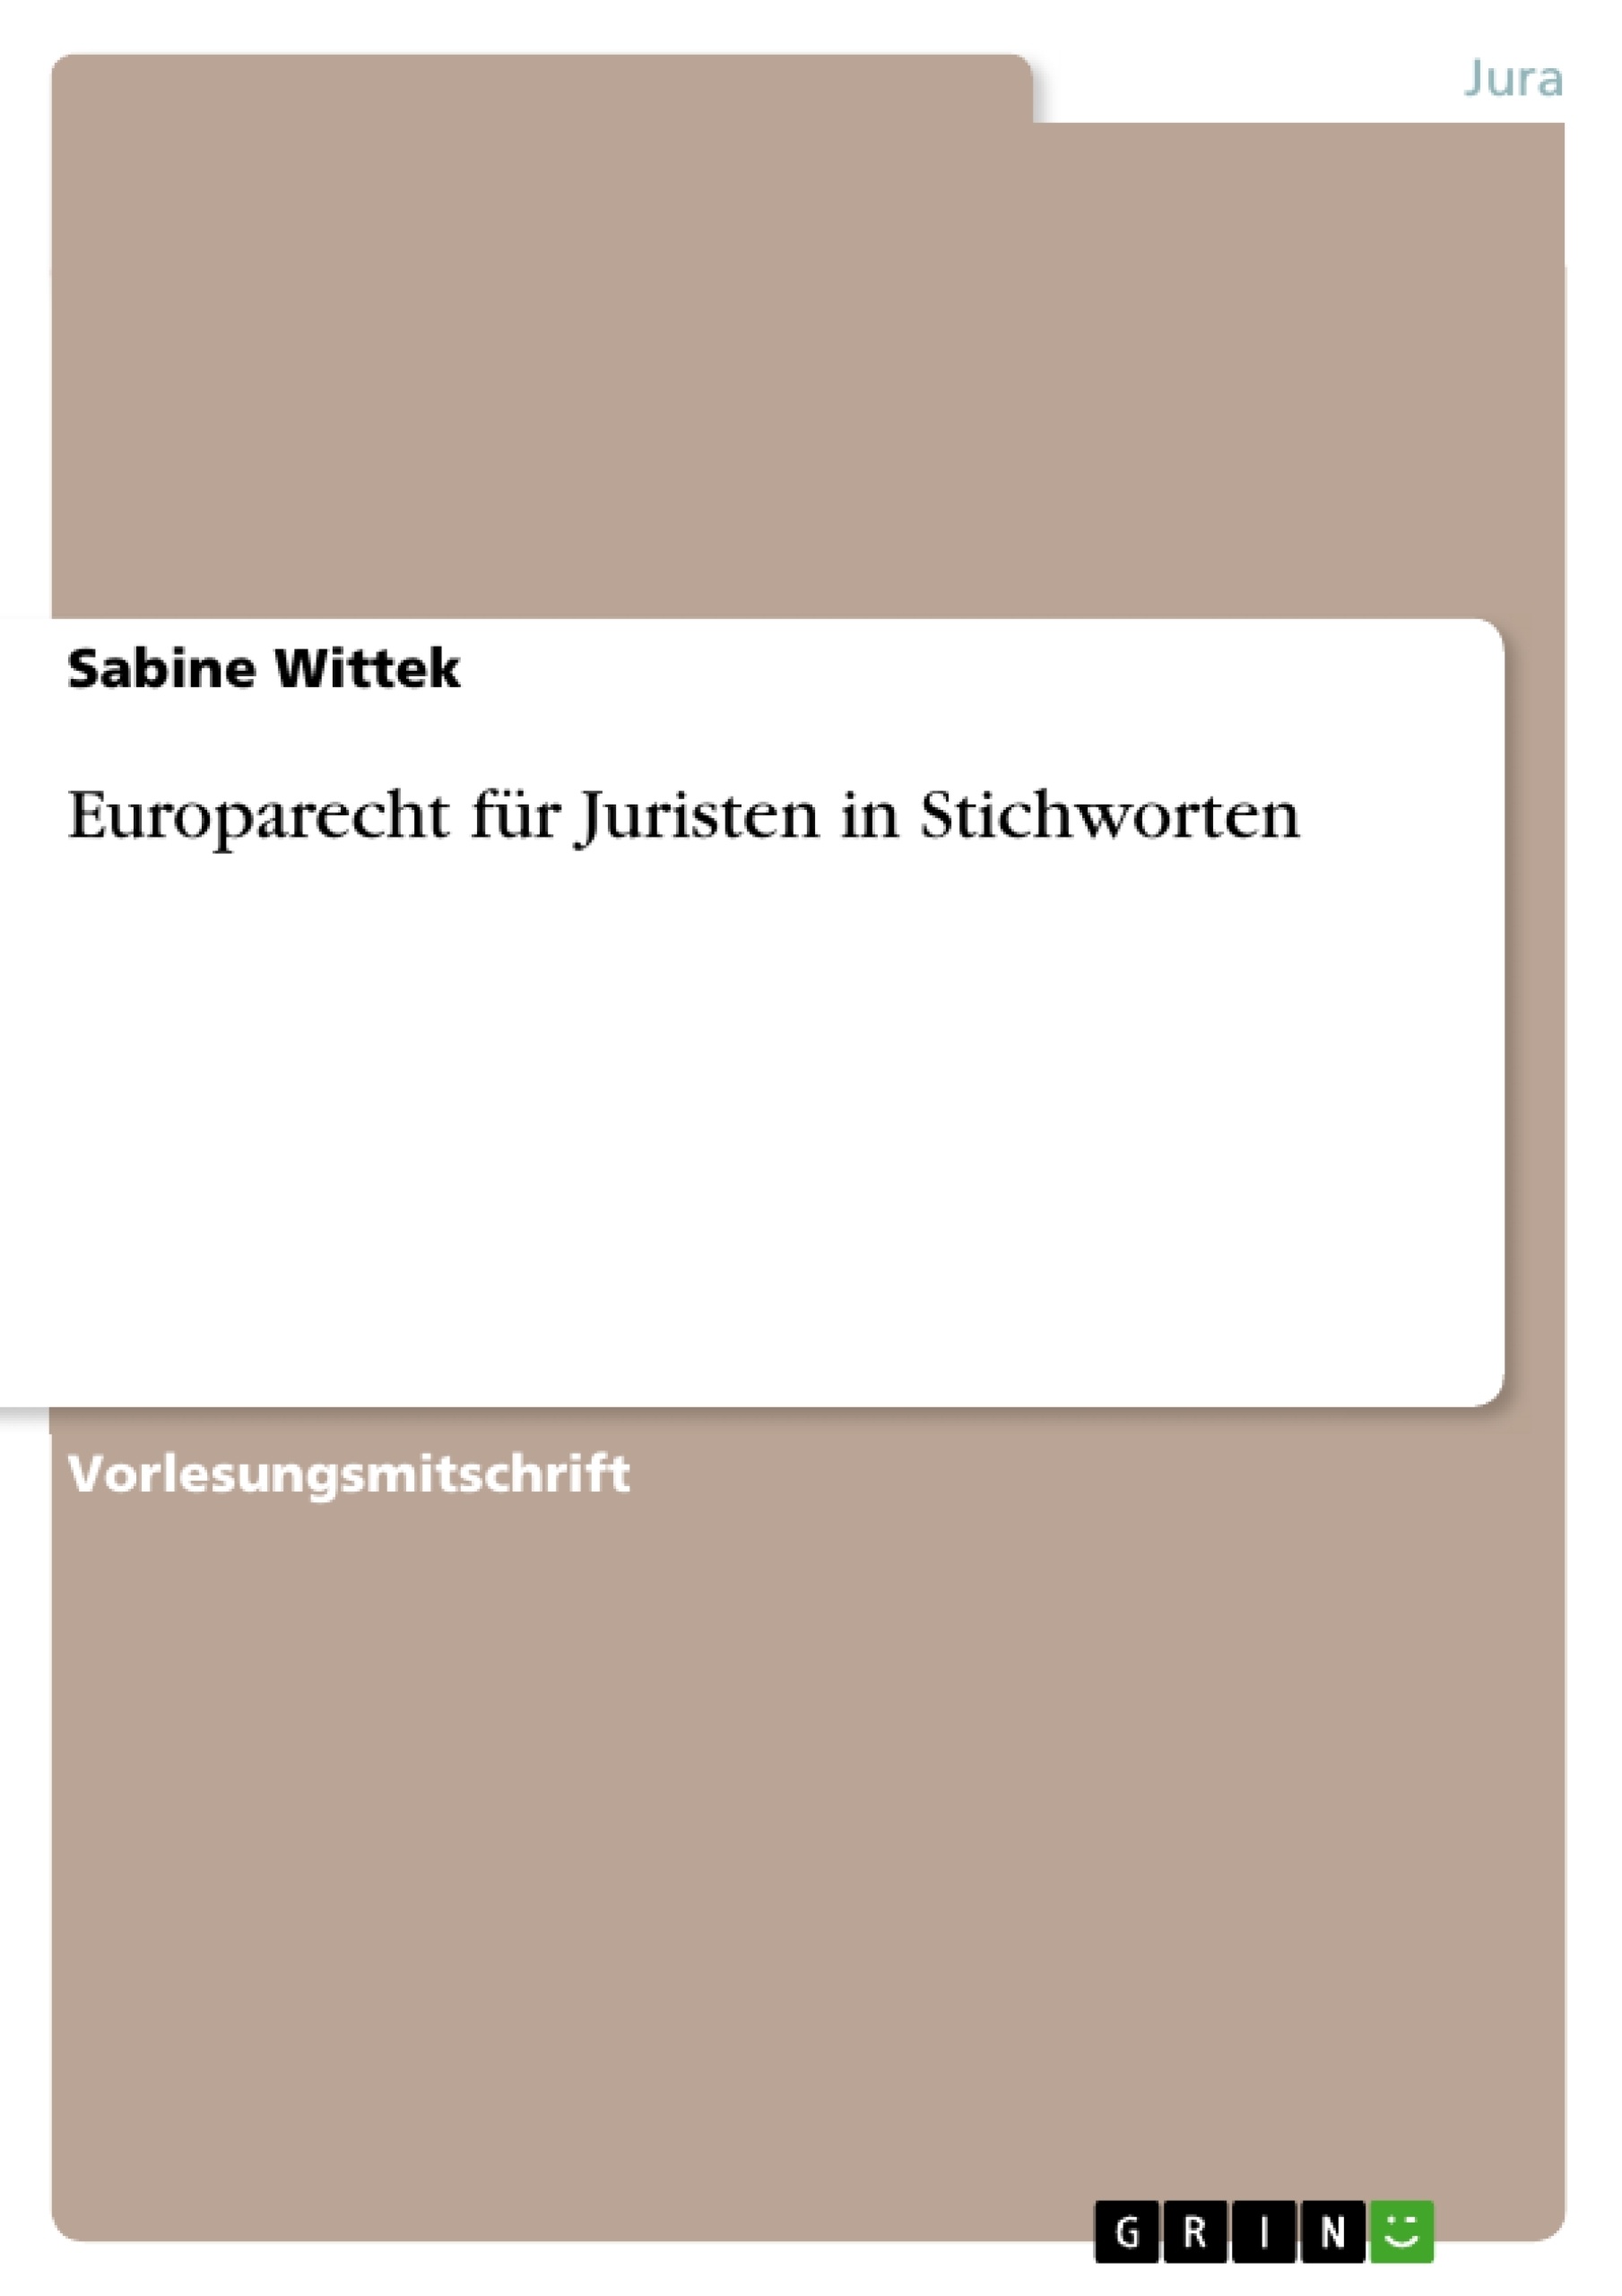 Title: Europarecht für Juristen in Stichworten